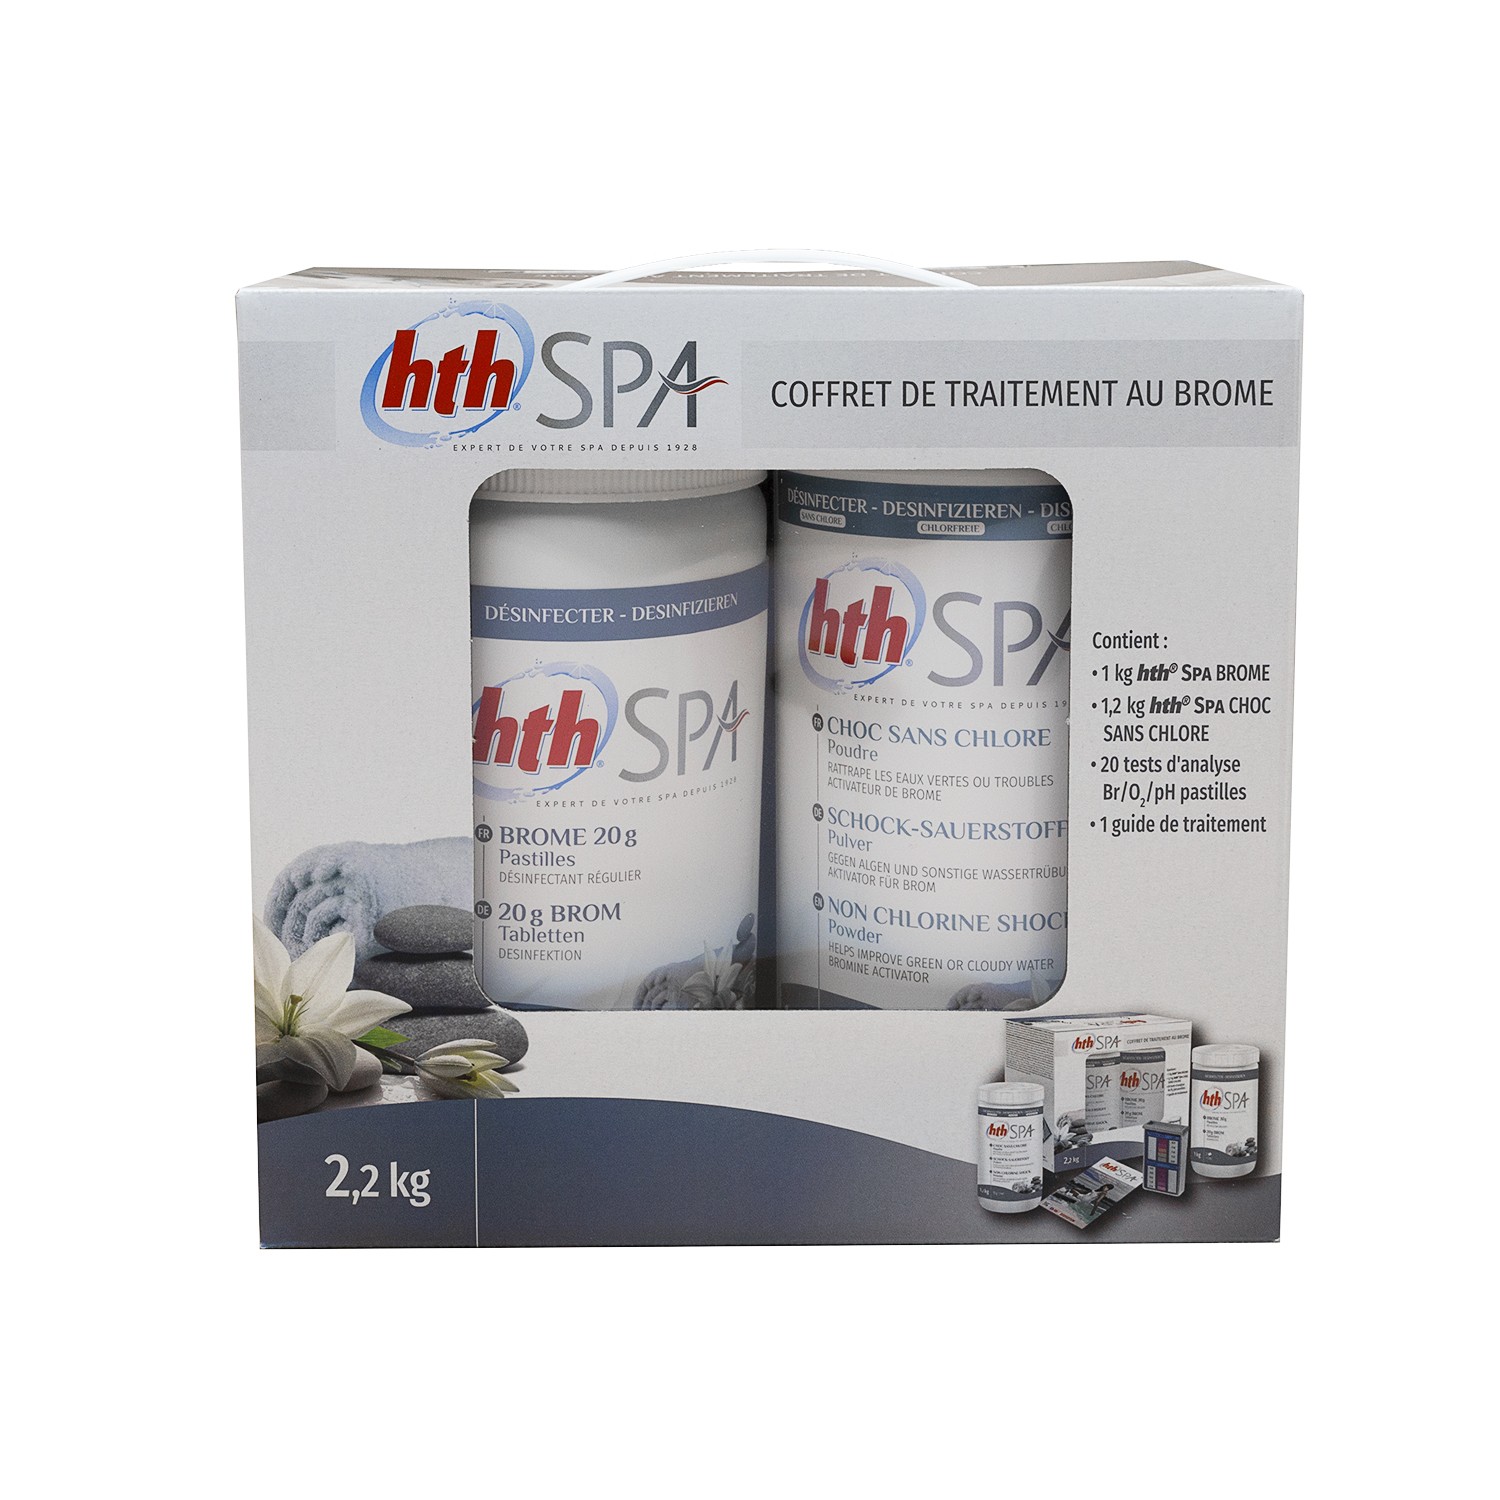 HTH Spa Chlore Stabilisé Multifonction - Pastilles - 1,2kg - Traitement Eau  Spa